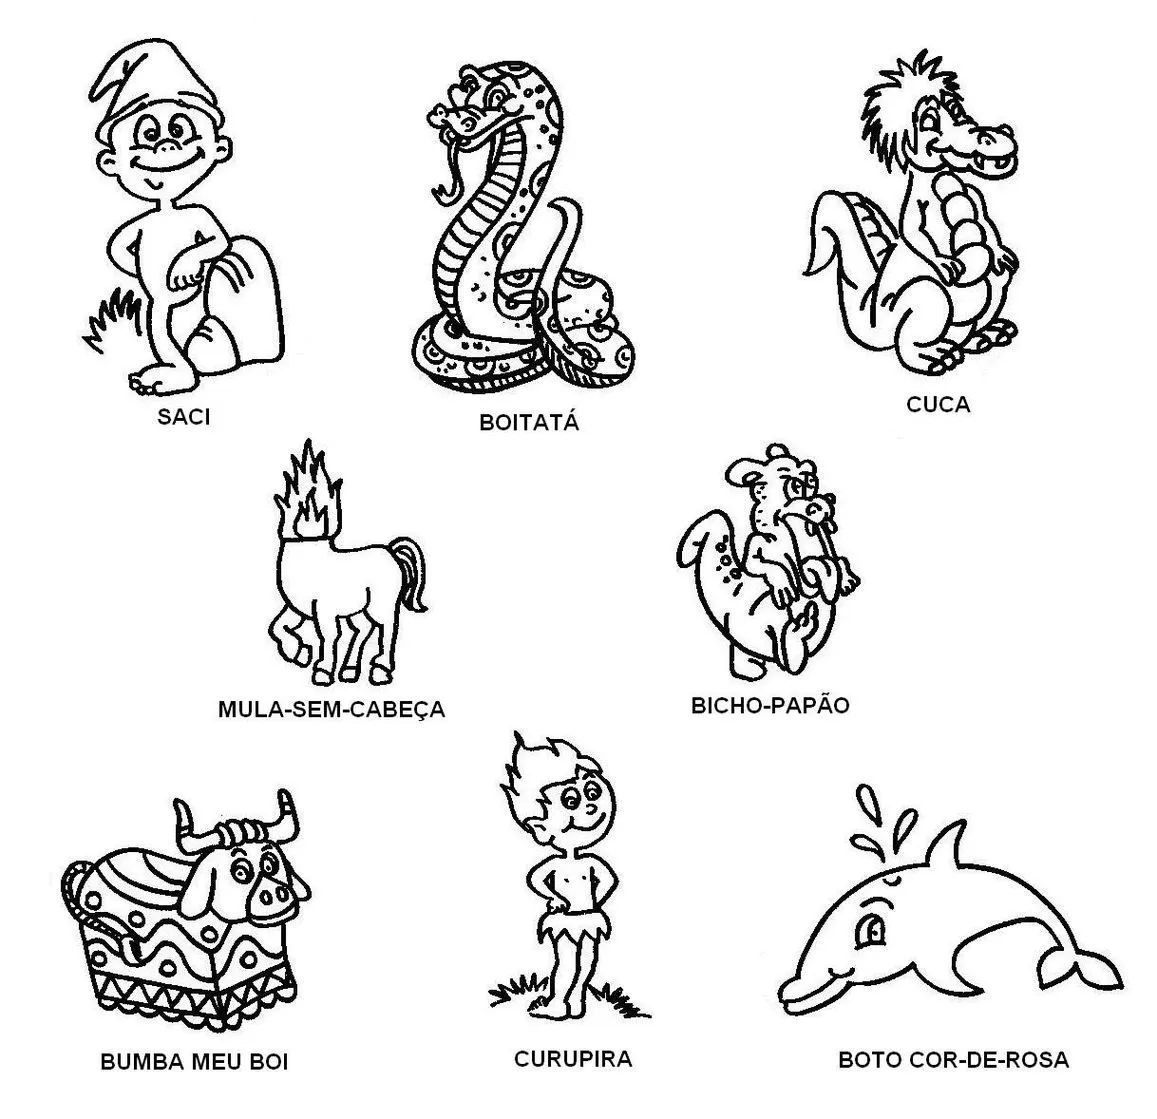 Personagens folclóricos para imprimir e colorir